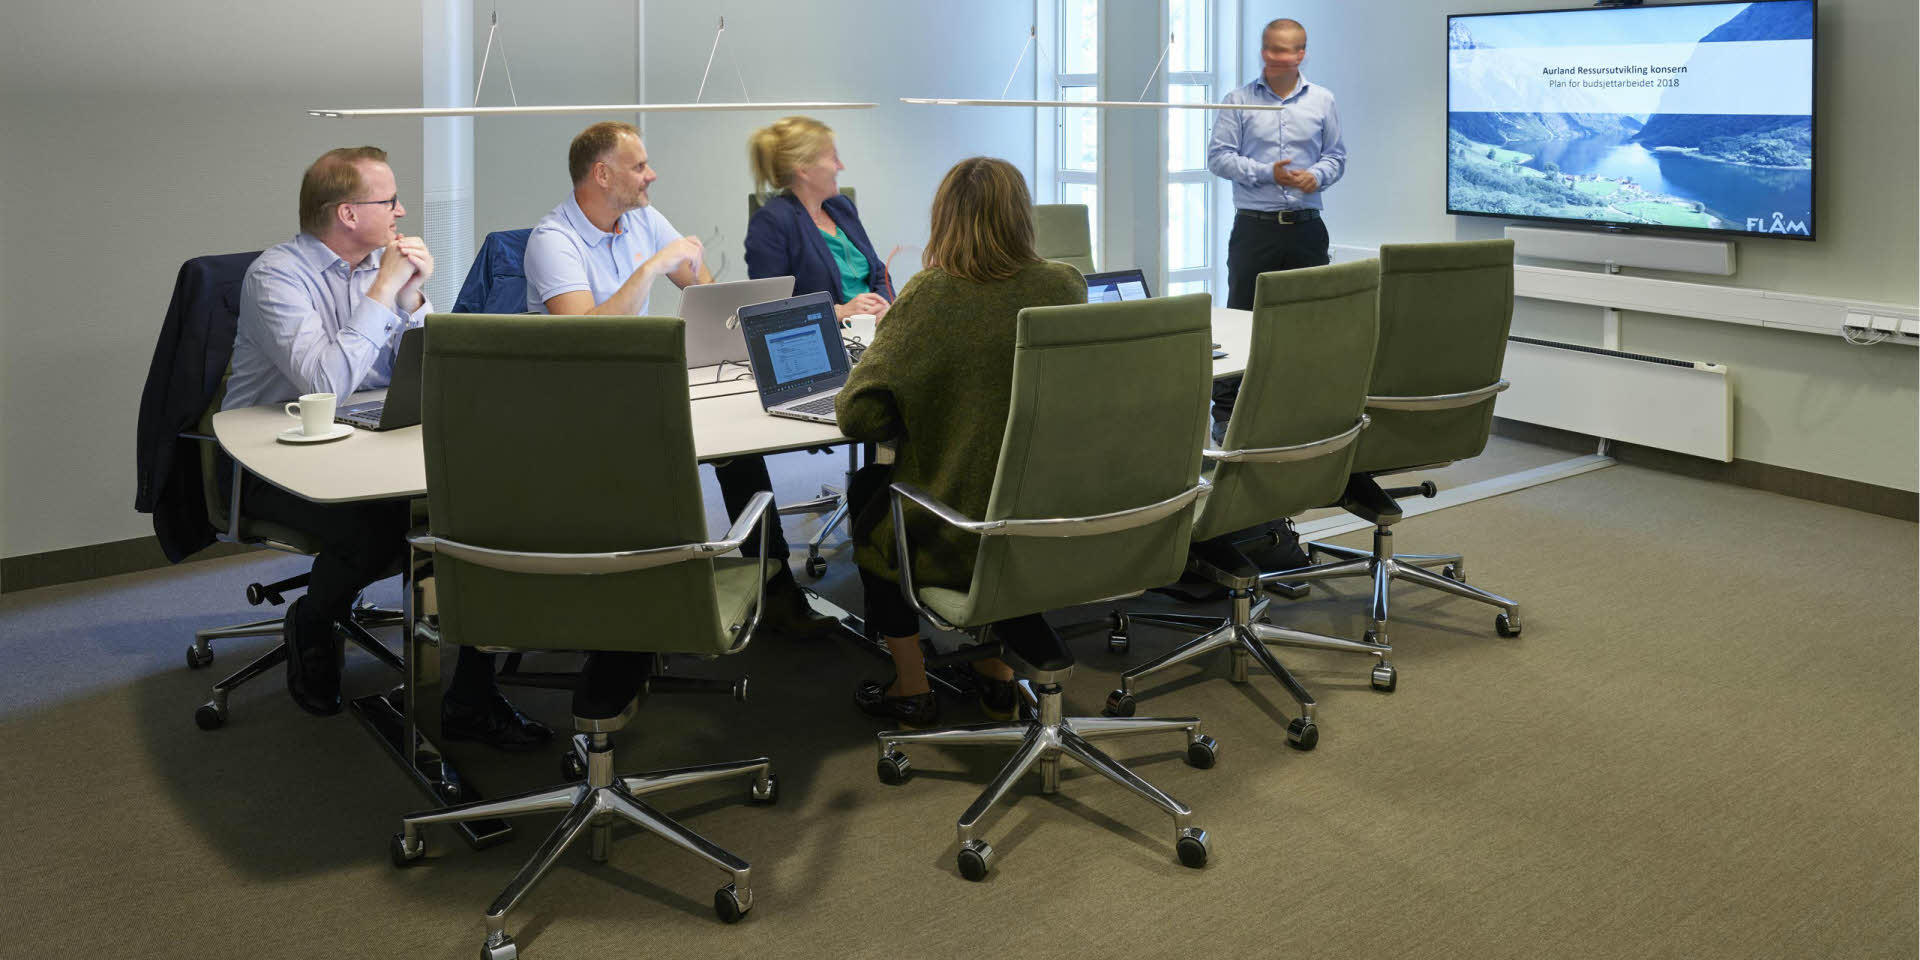 Cuatro personas sentadas en torno a una mesa observan a un hombre que realiza una presentación en el hotel Fretheim